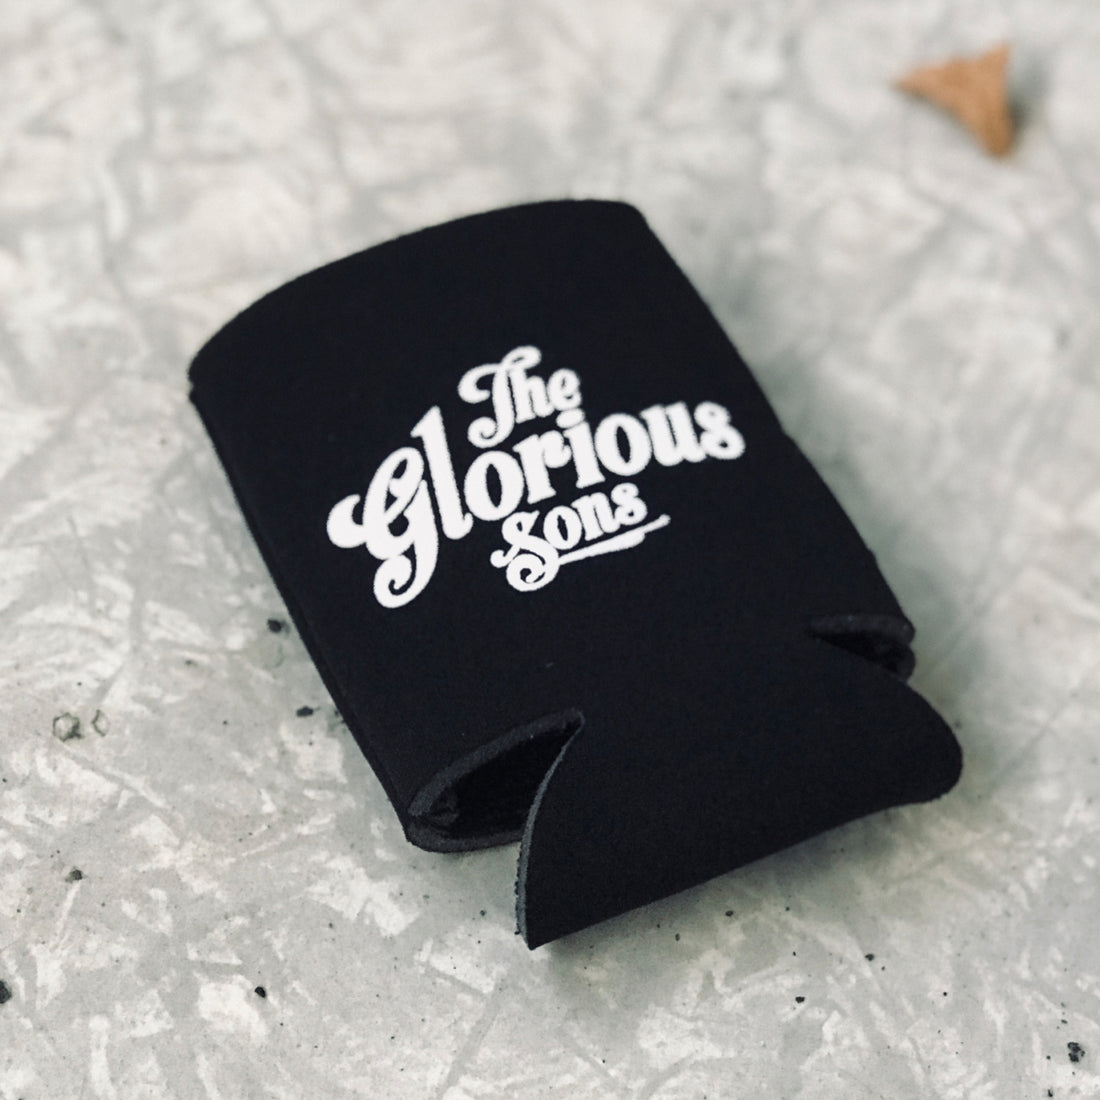 The Glorious Sons - Logo - Beer Koozie